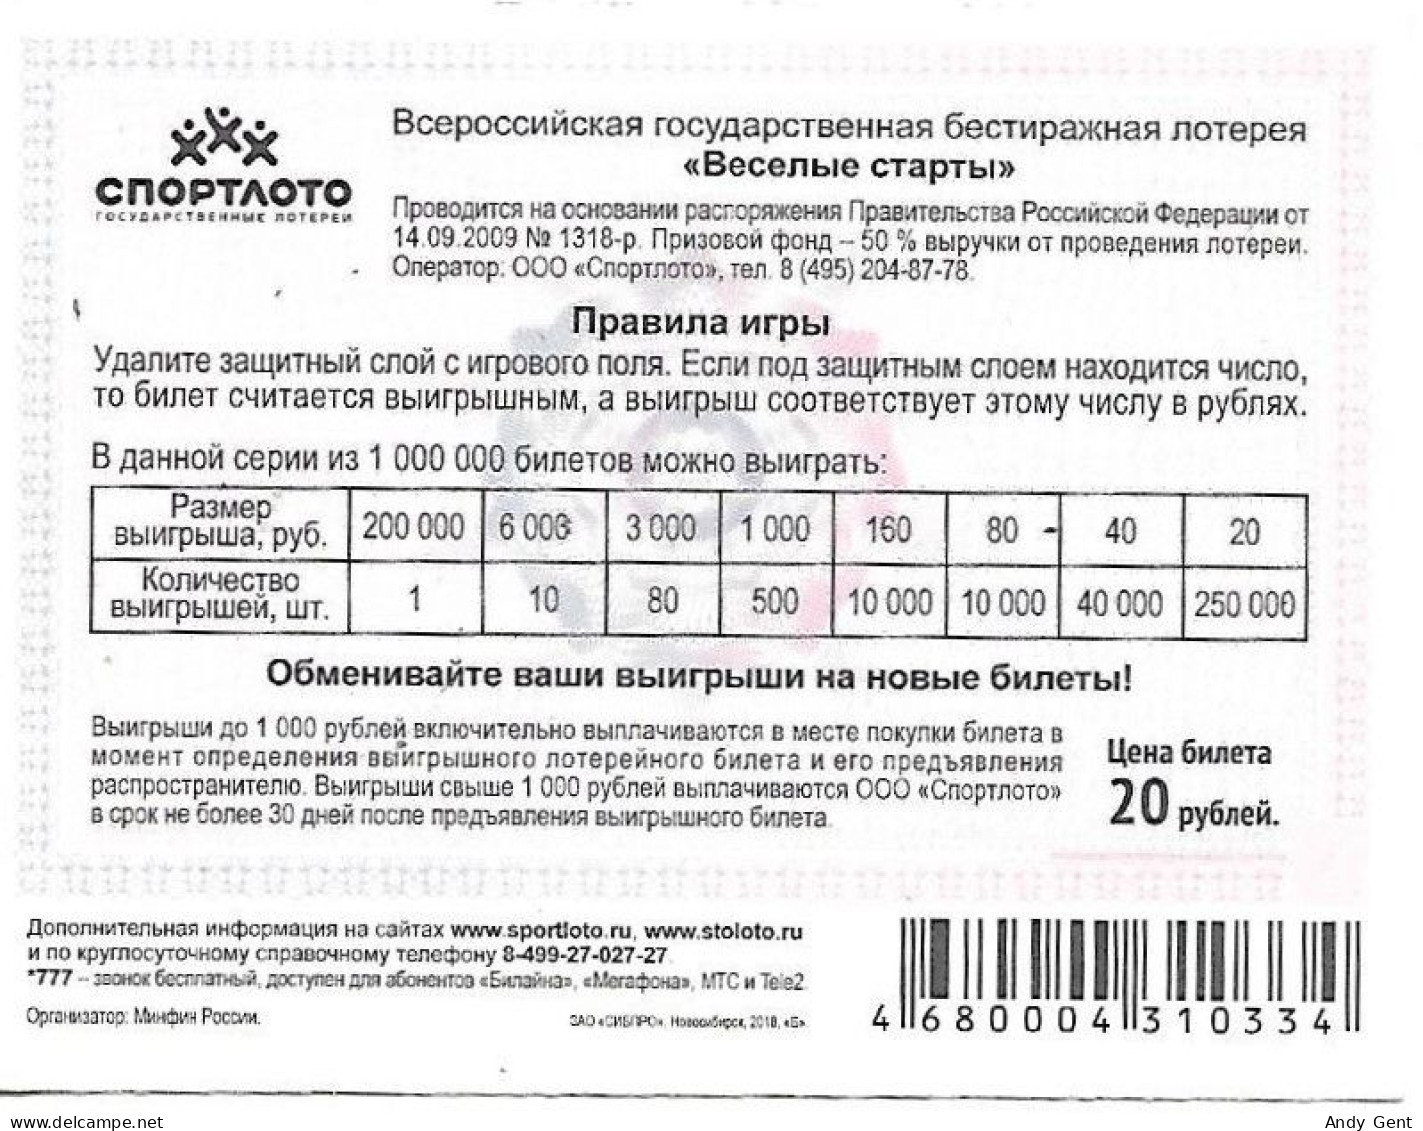 #10 Lottery Ticket / Scratch Russia Archery 2009 - Loterijbiljetten